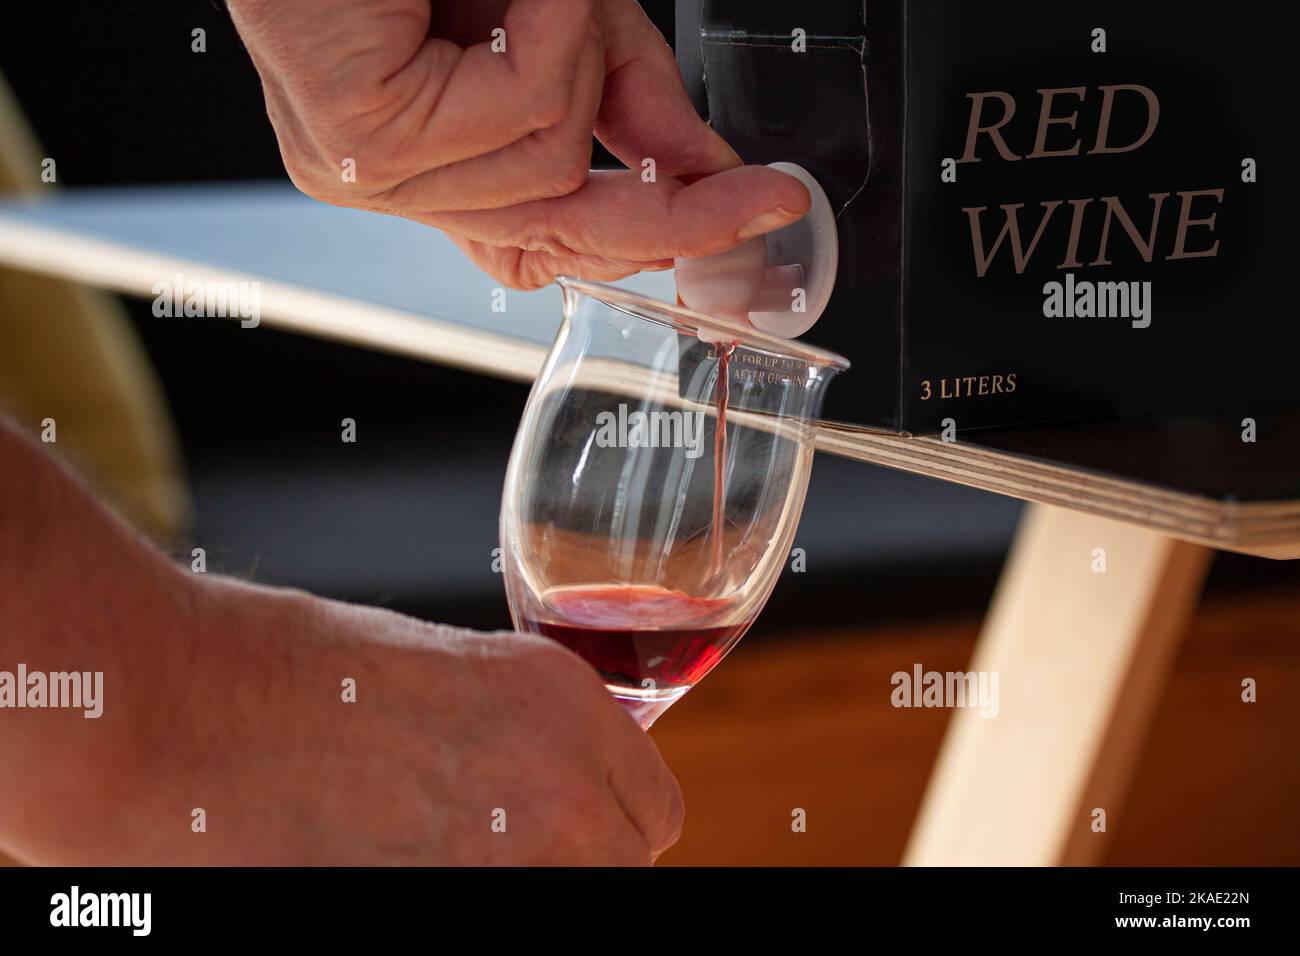 Versez à la main du vin rouge dans un verre à partir d'un BIB - sac en carton dans une boîte avec robinet ouvert sur une table. Gros plan. Marque fictive. Banque D'Images